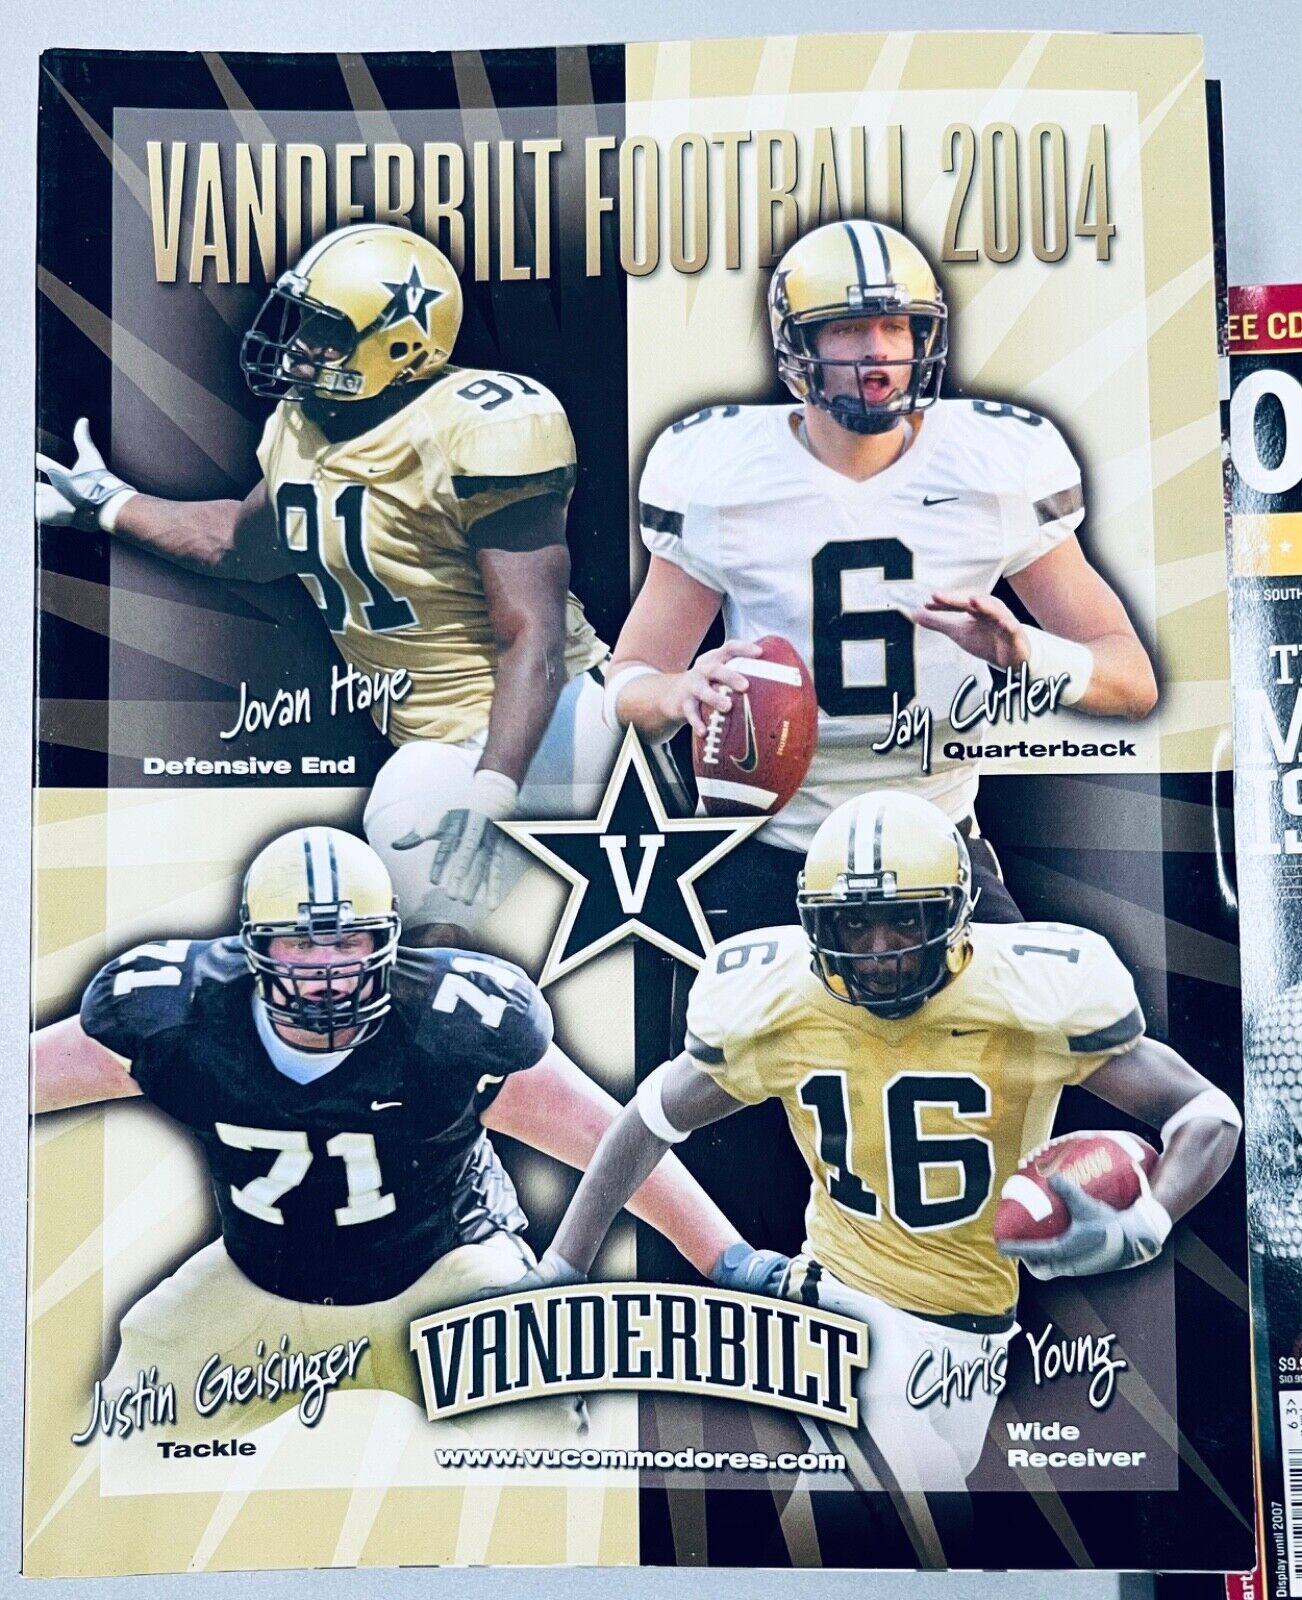 Vanderbilt Commodores football  2004 Media Guide Jay Cutler